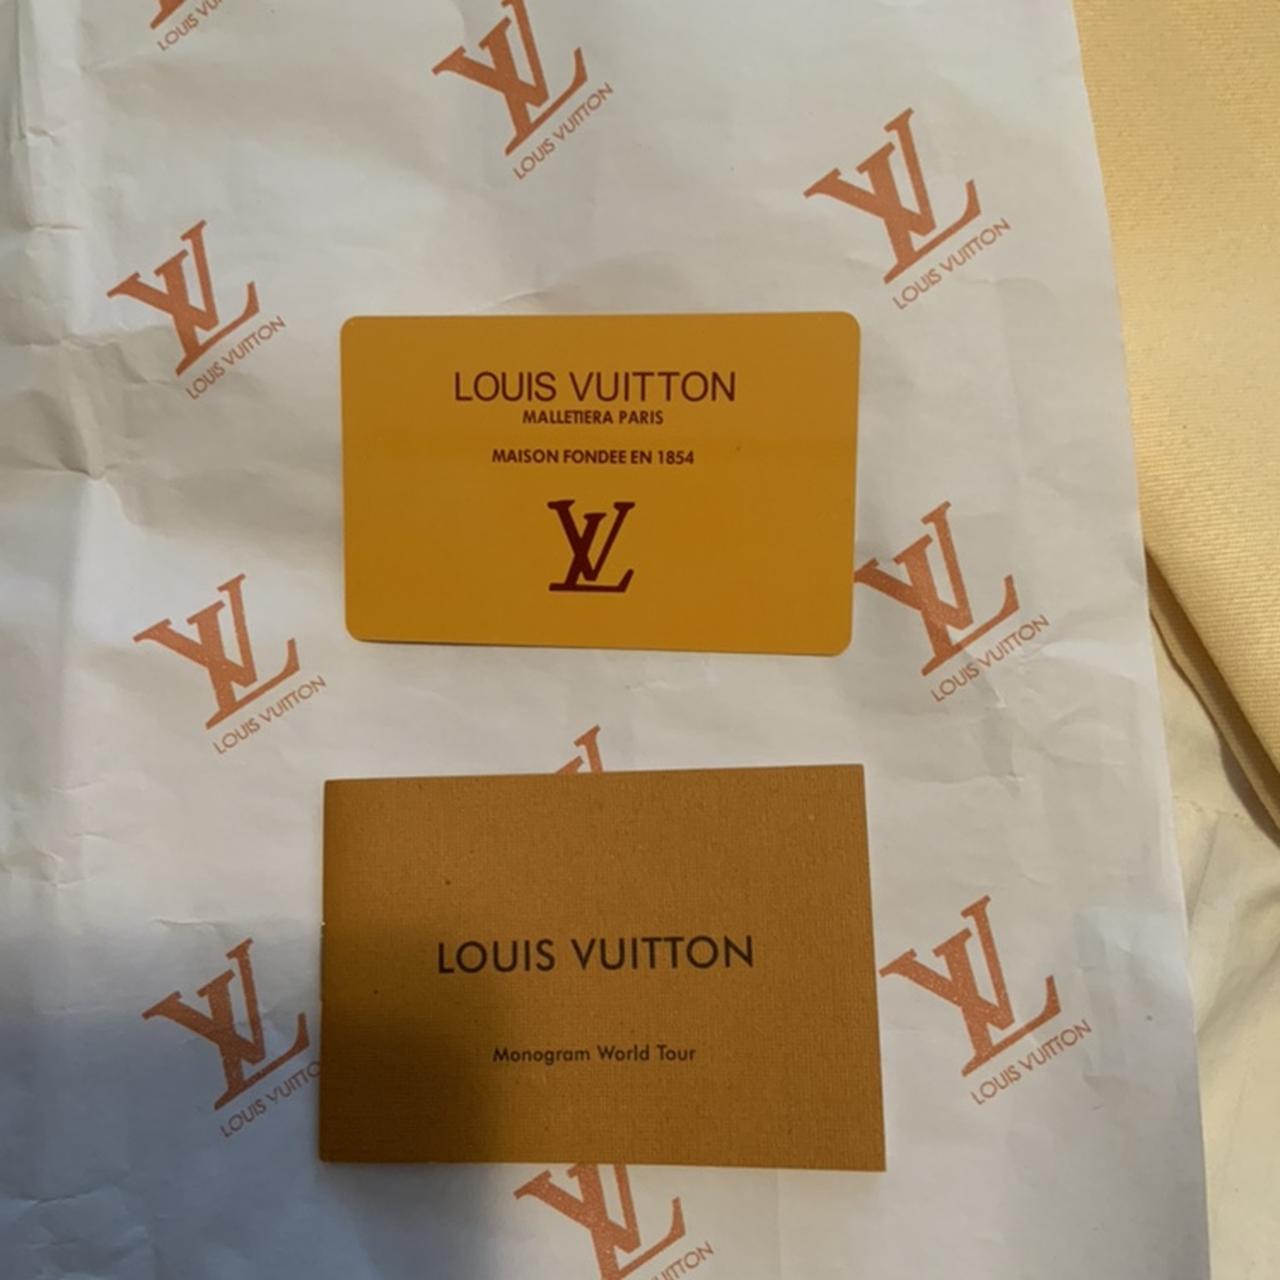 Louis Vuitton Passenger Sandals Never worn, got as a - Depop